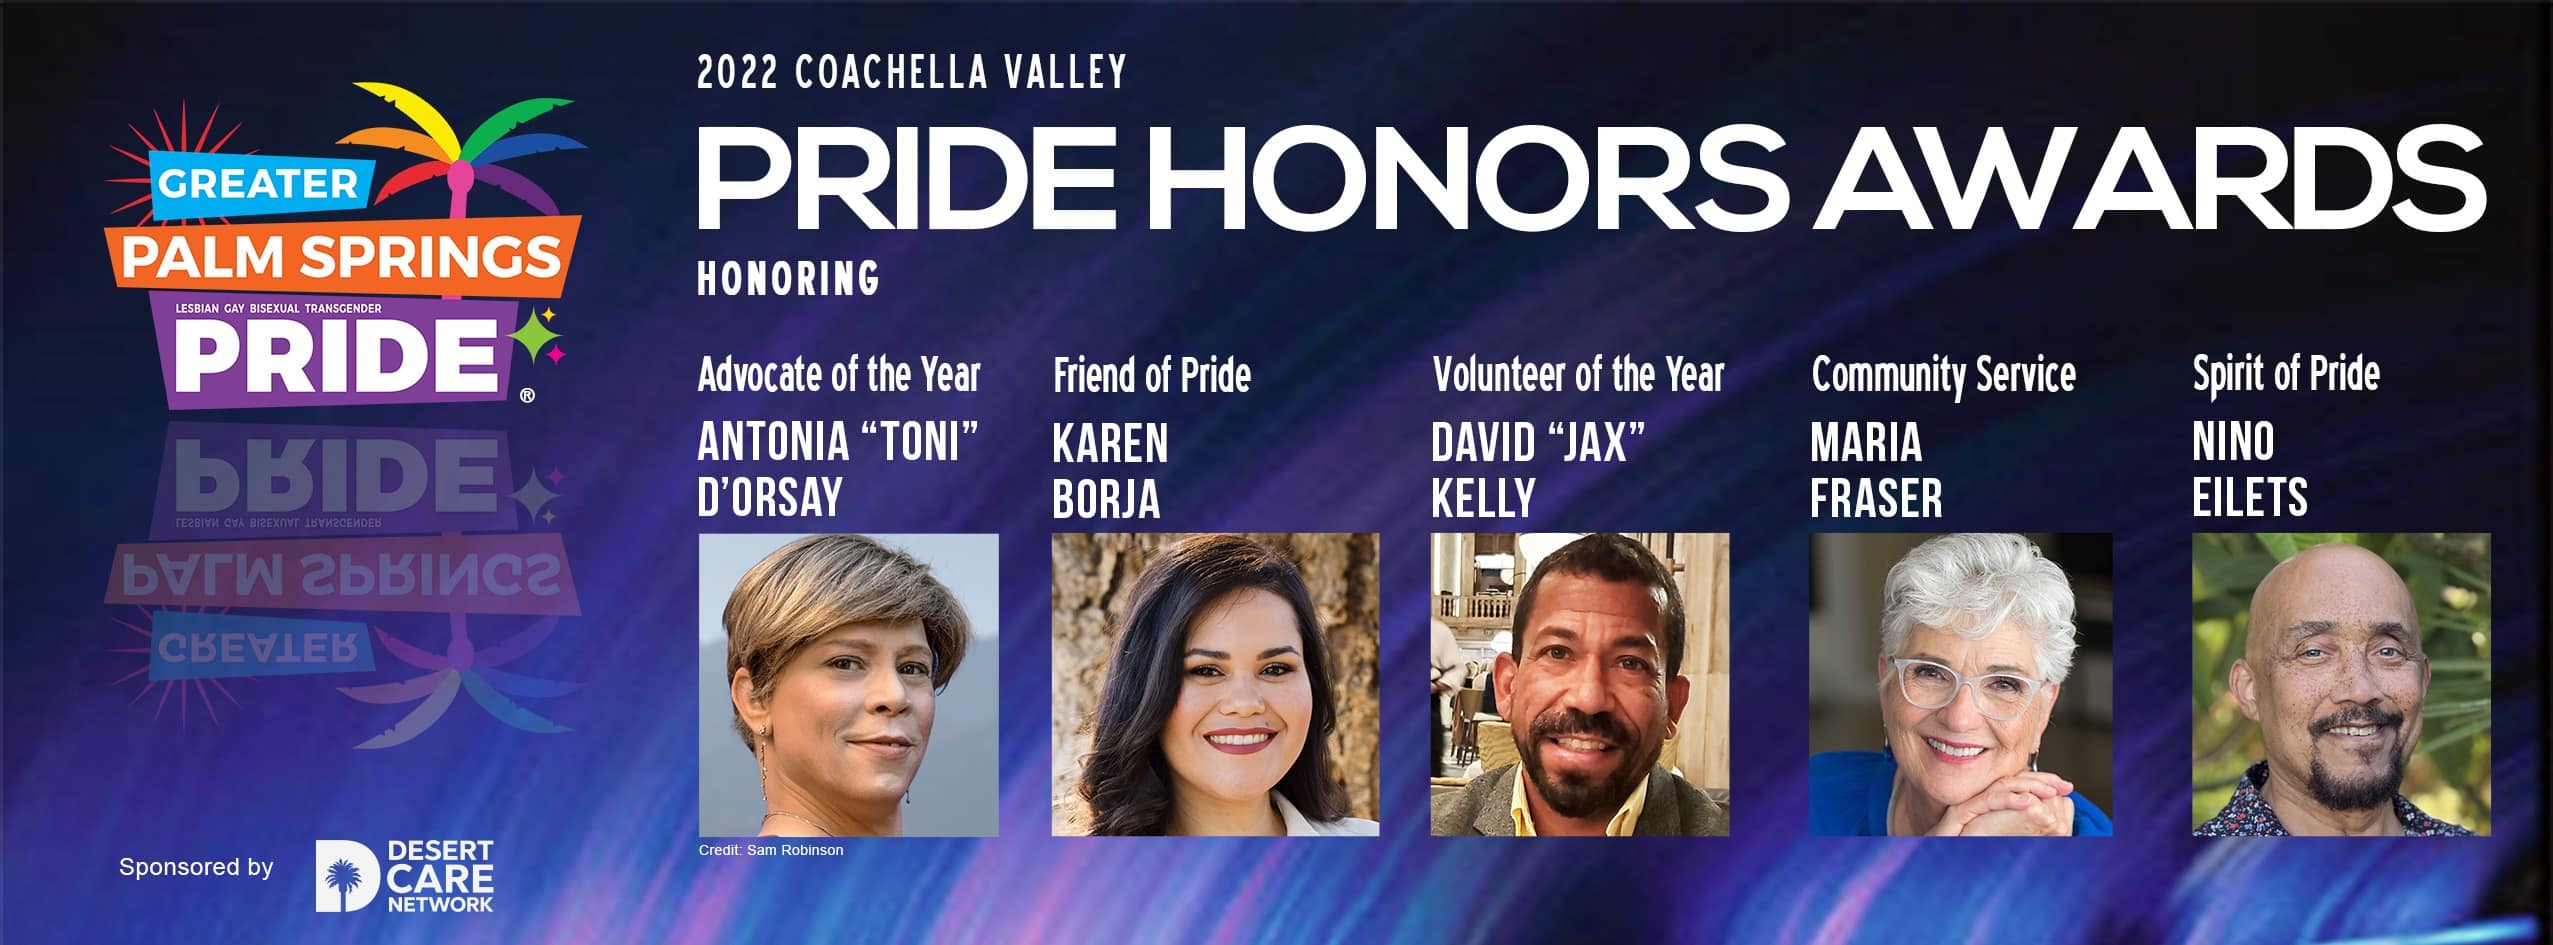 Pride Honors Awards 2022